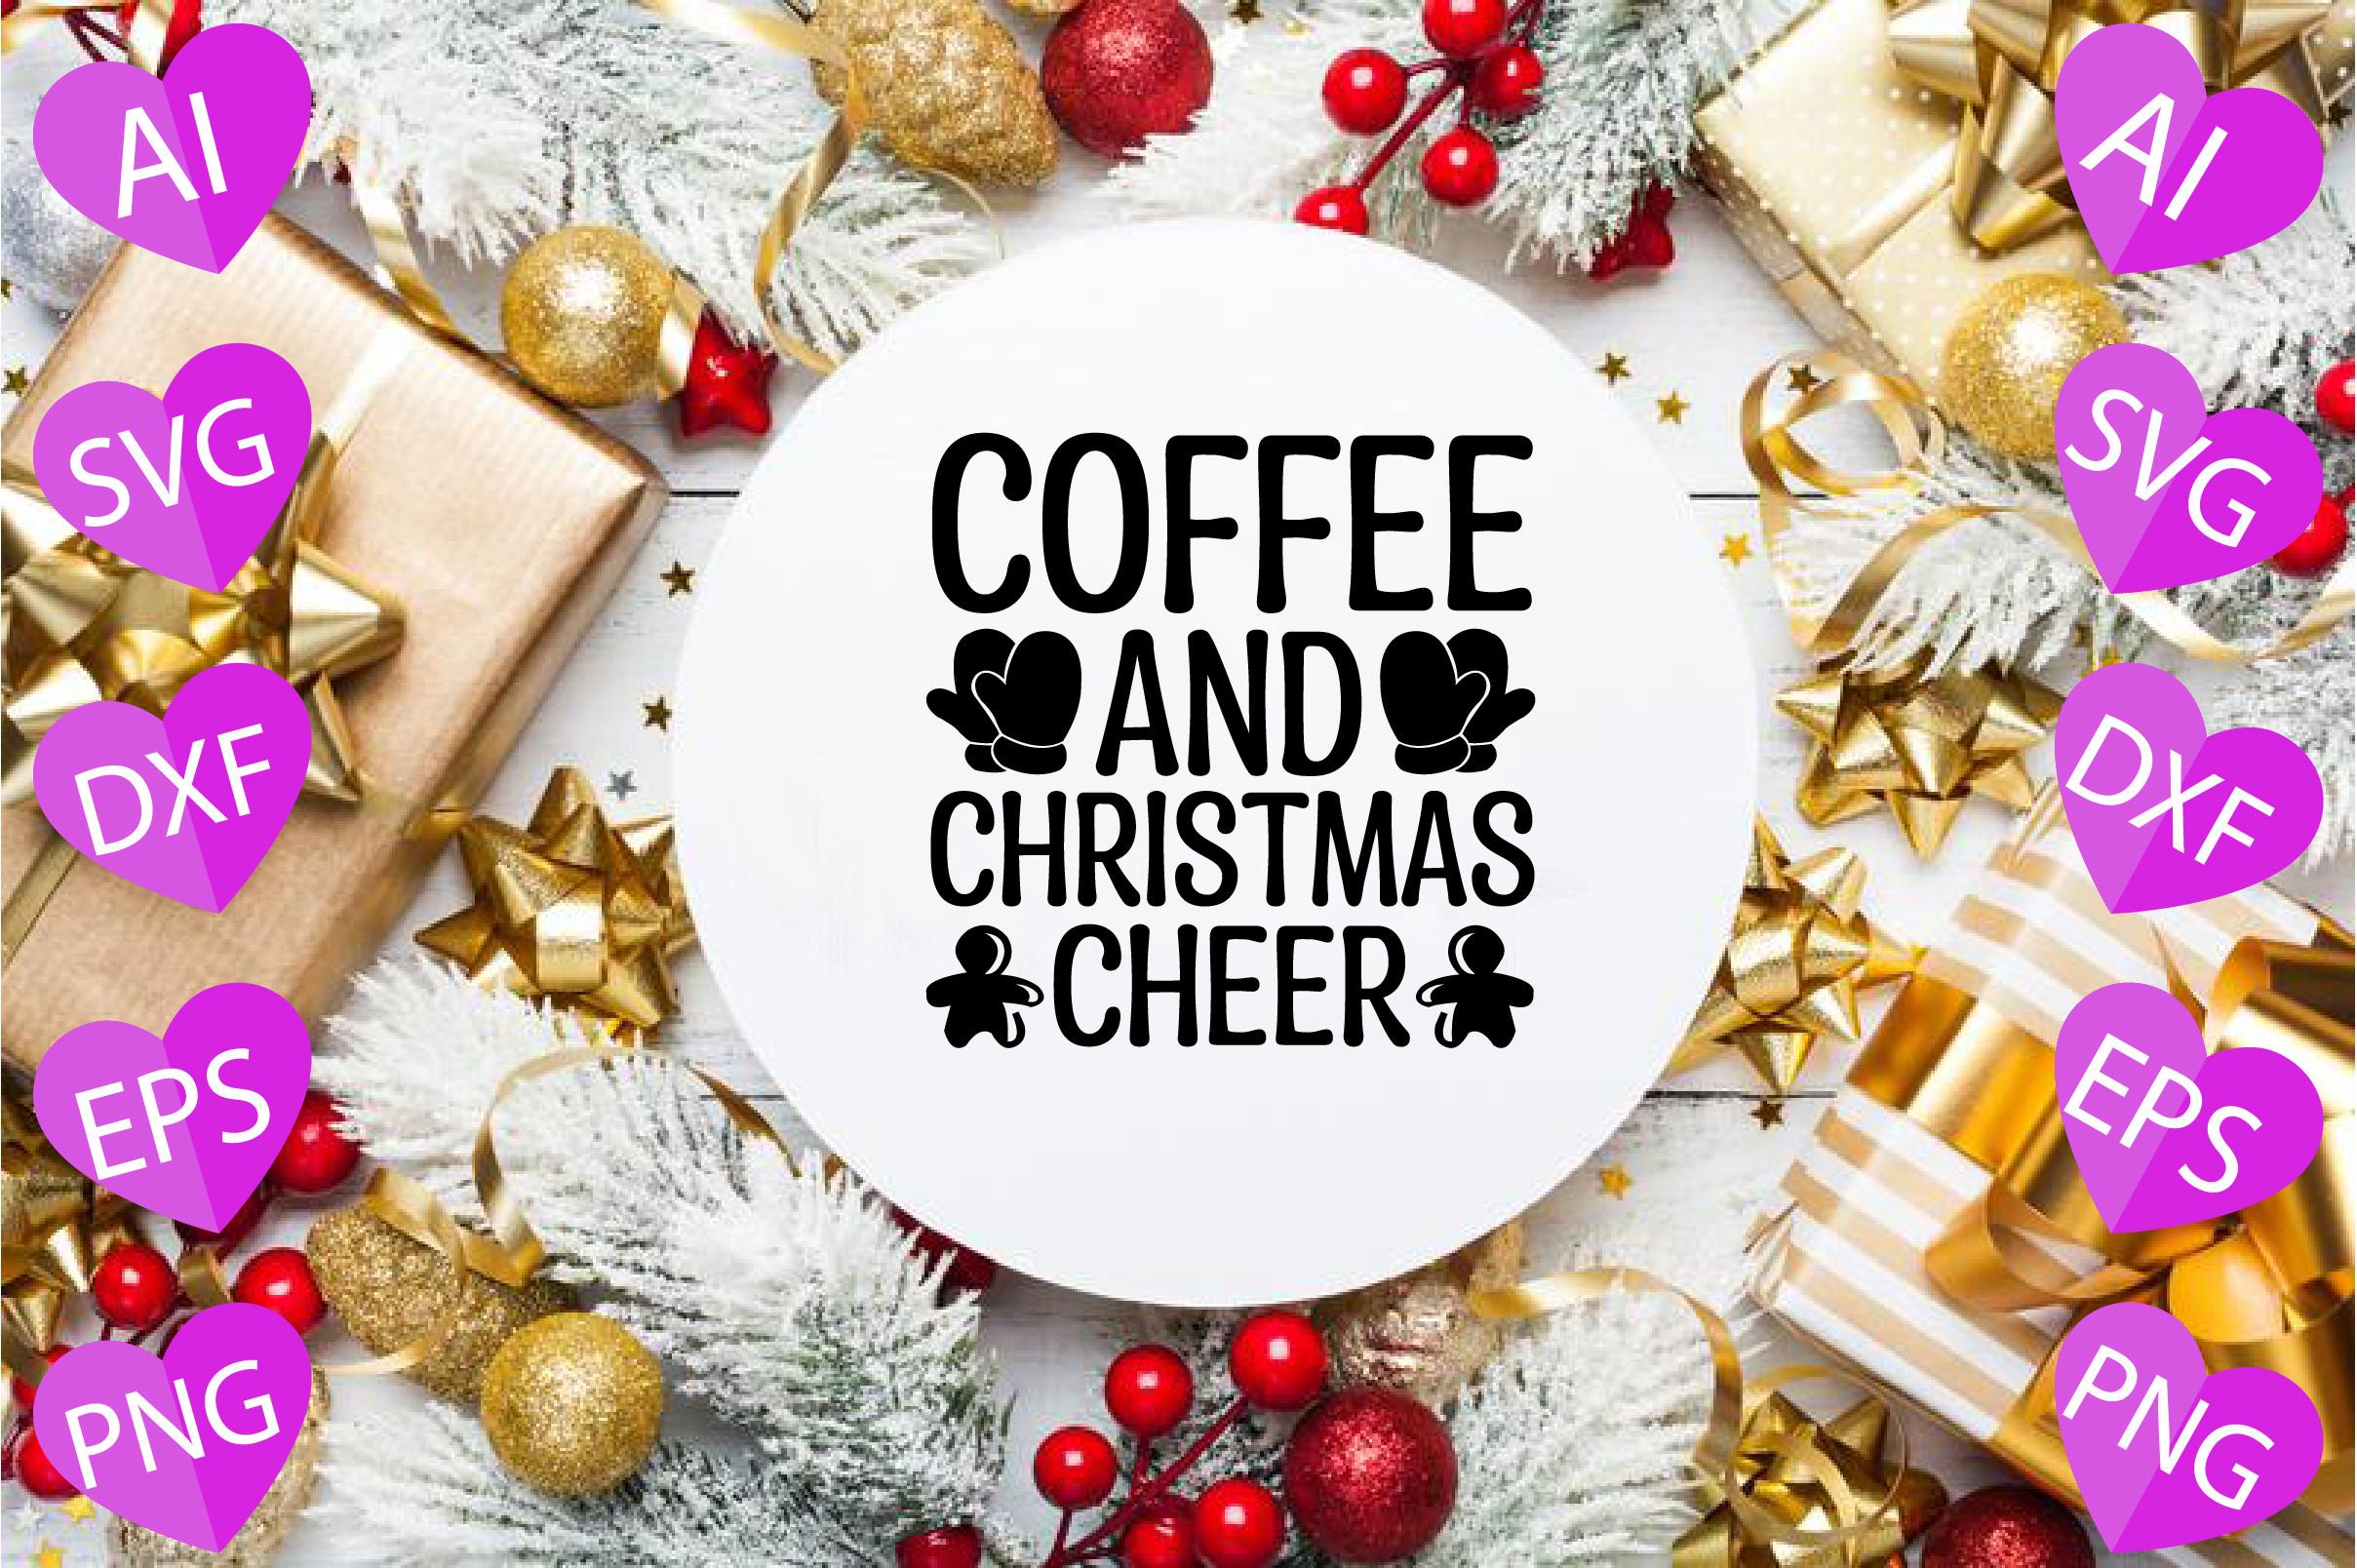 Coffee and Christmas Cheer